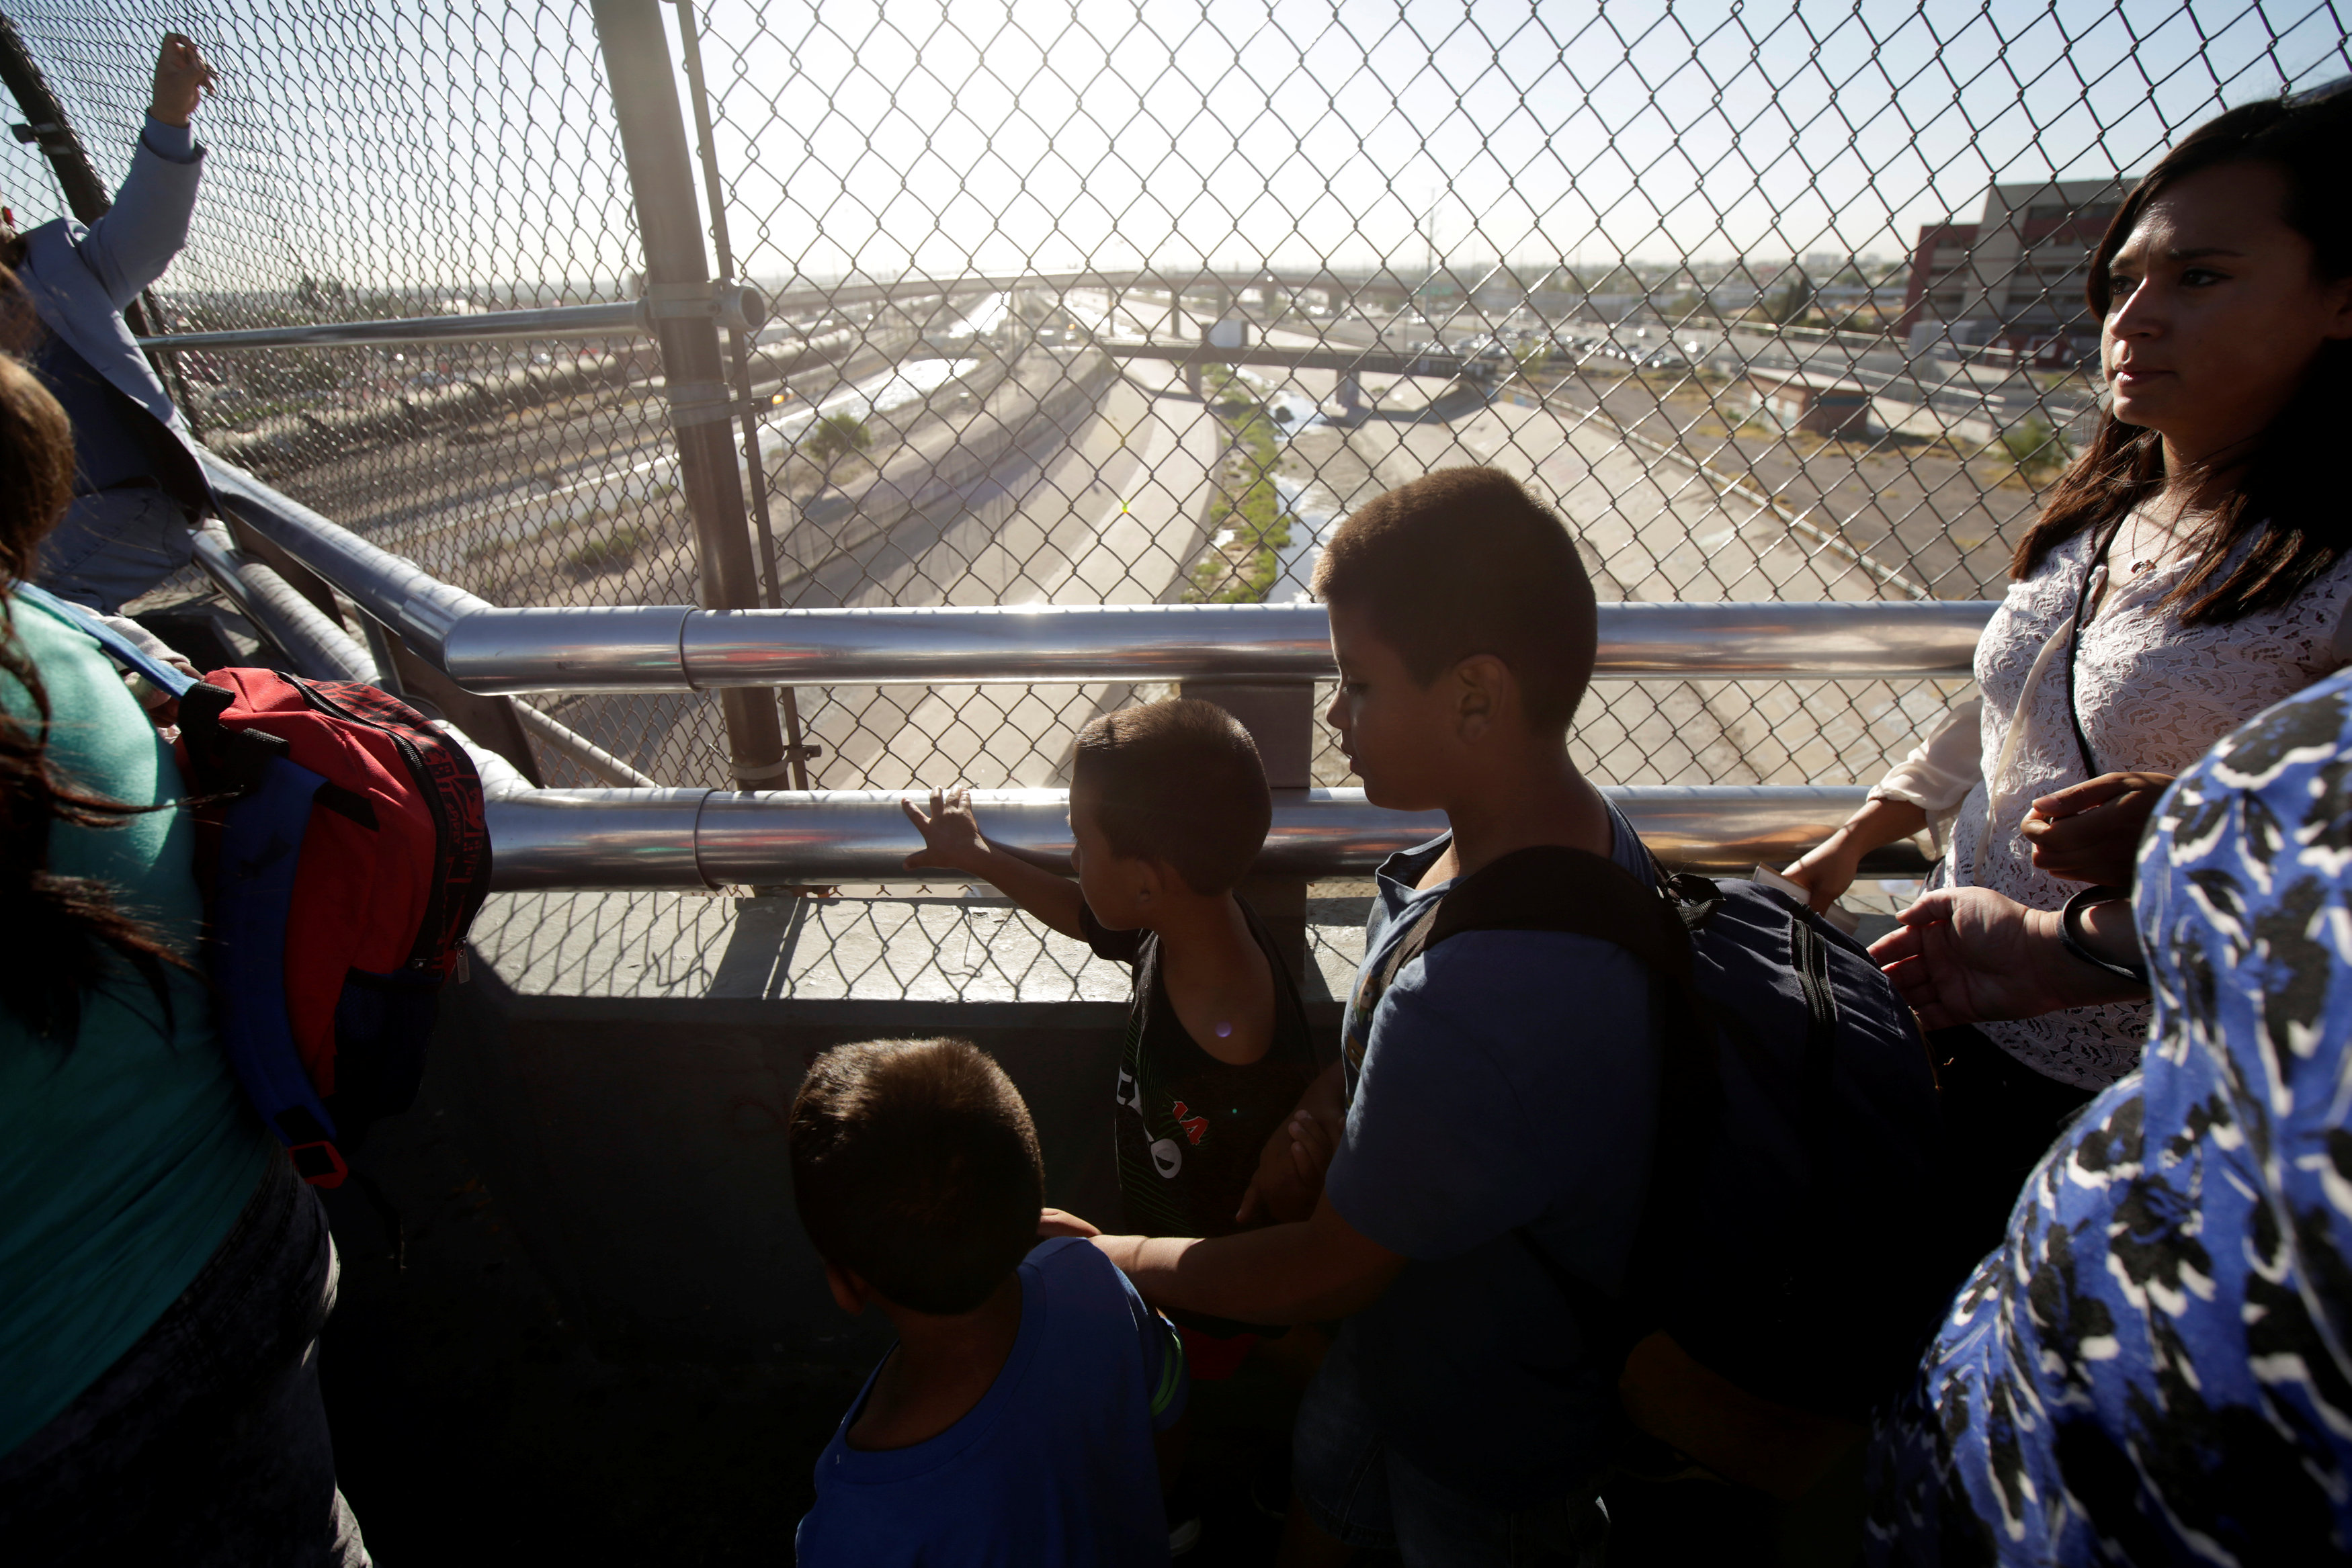 Juez ordena revisar solicitantes de asilo de inmigrantes en Estados Unidos